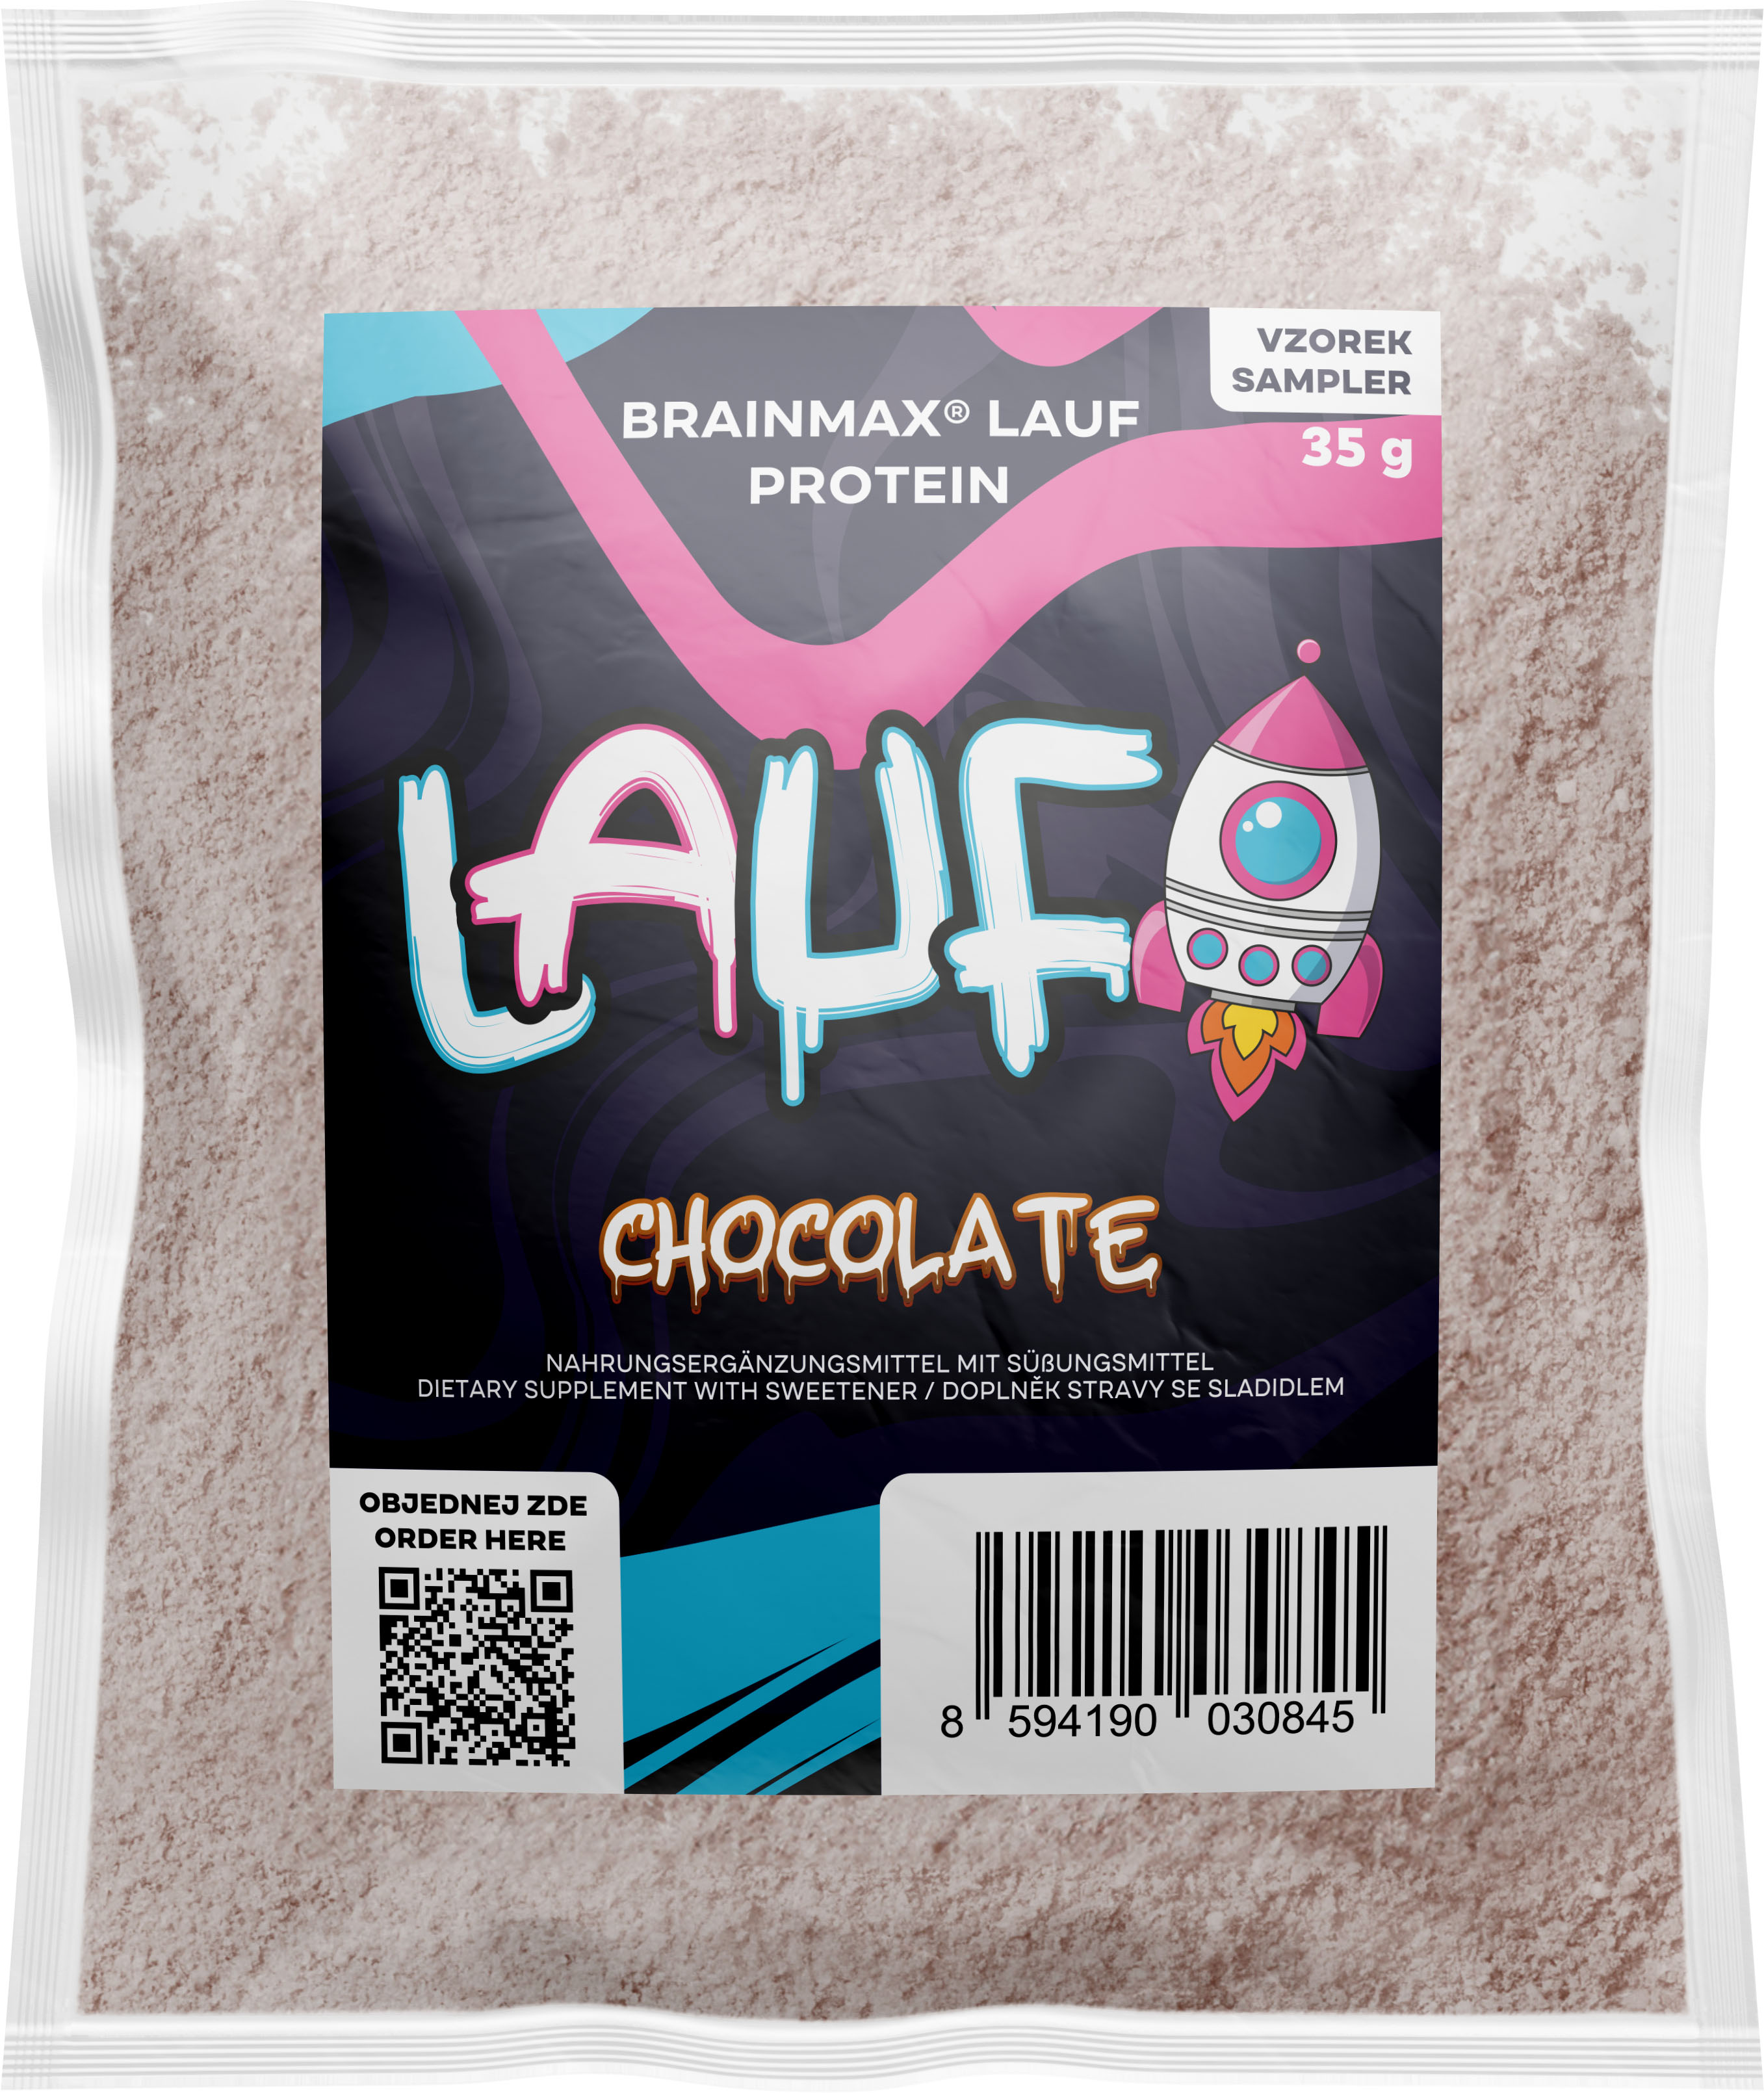 BrainMax LAUF Protein, nativní syrovátkový protein, 35 g, VZOREK Příchuť: Čokoláda Nativní syrovátkový protein, doplněk stravy